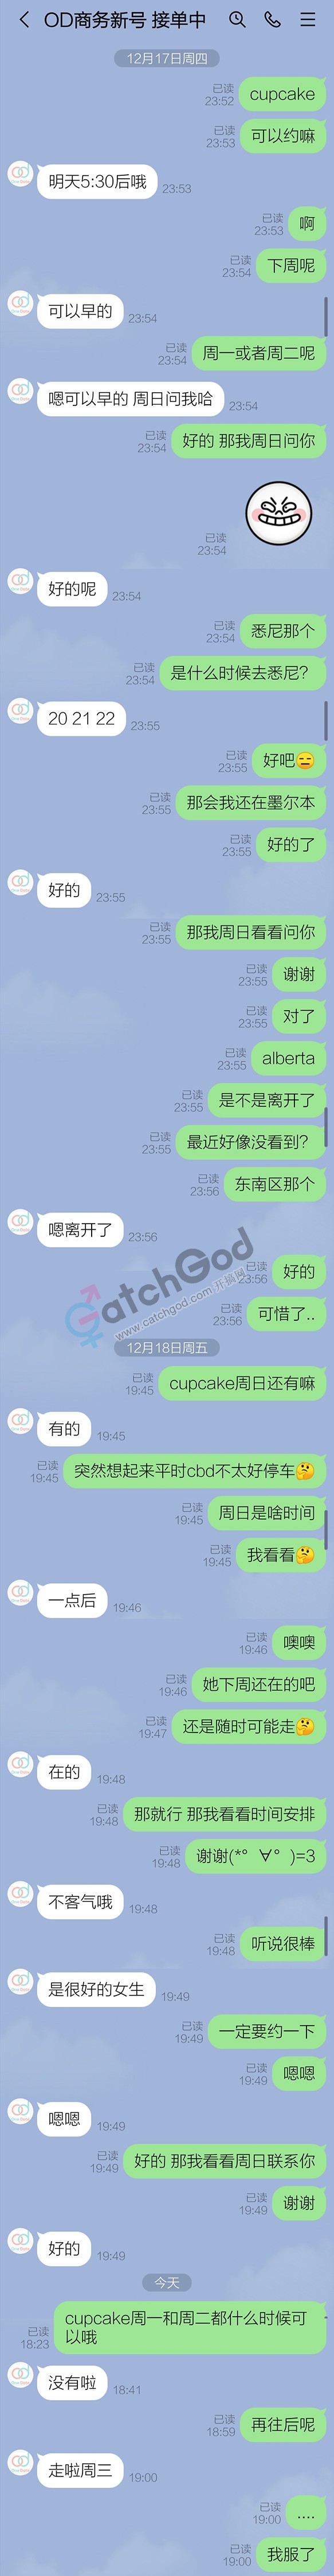 WeChat Image_20201220200352.jpg